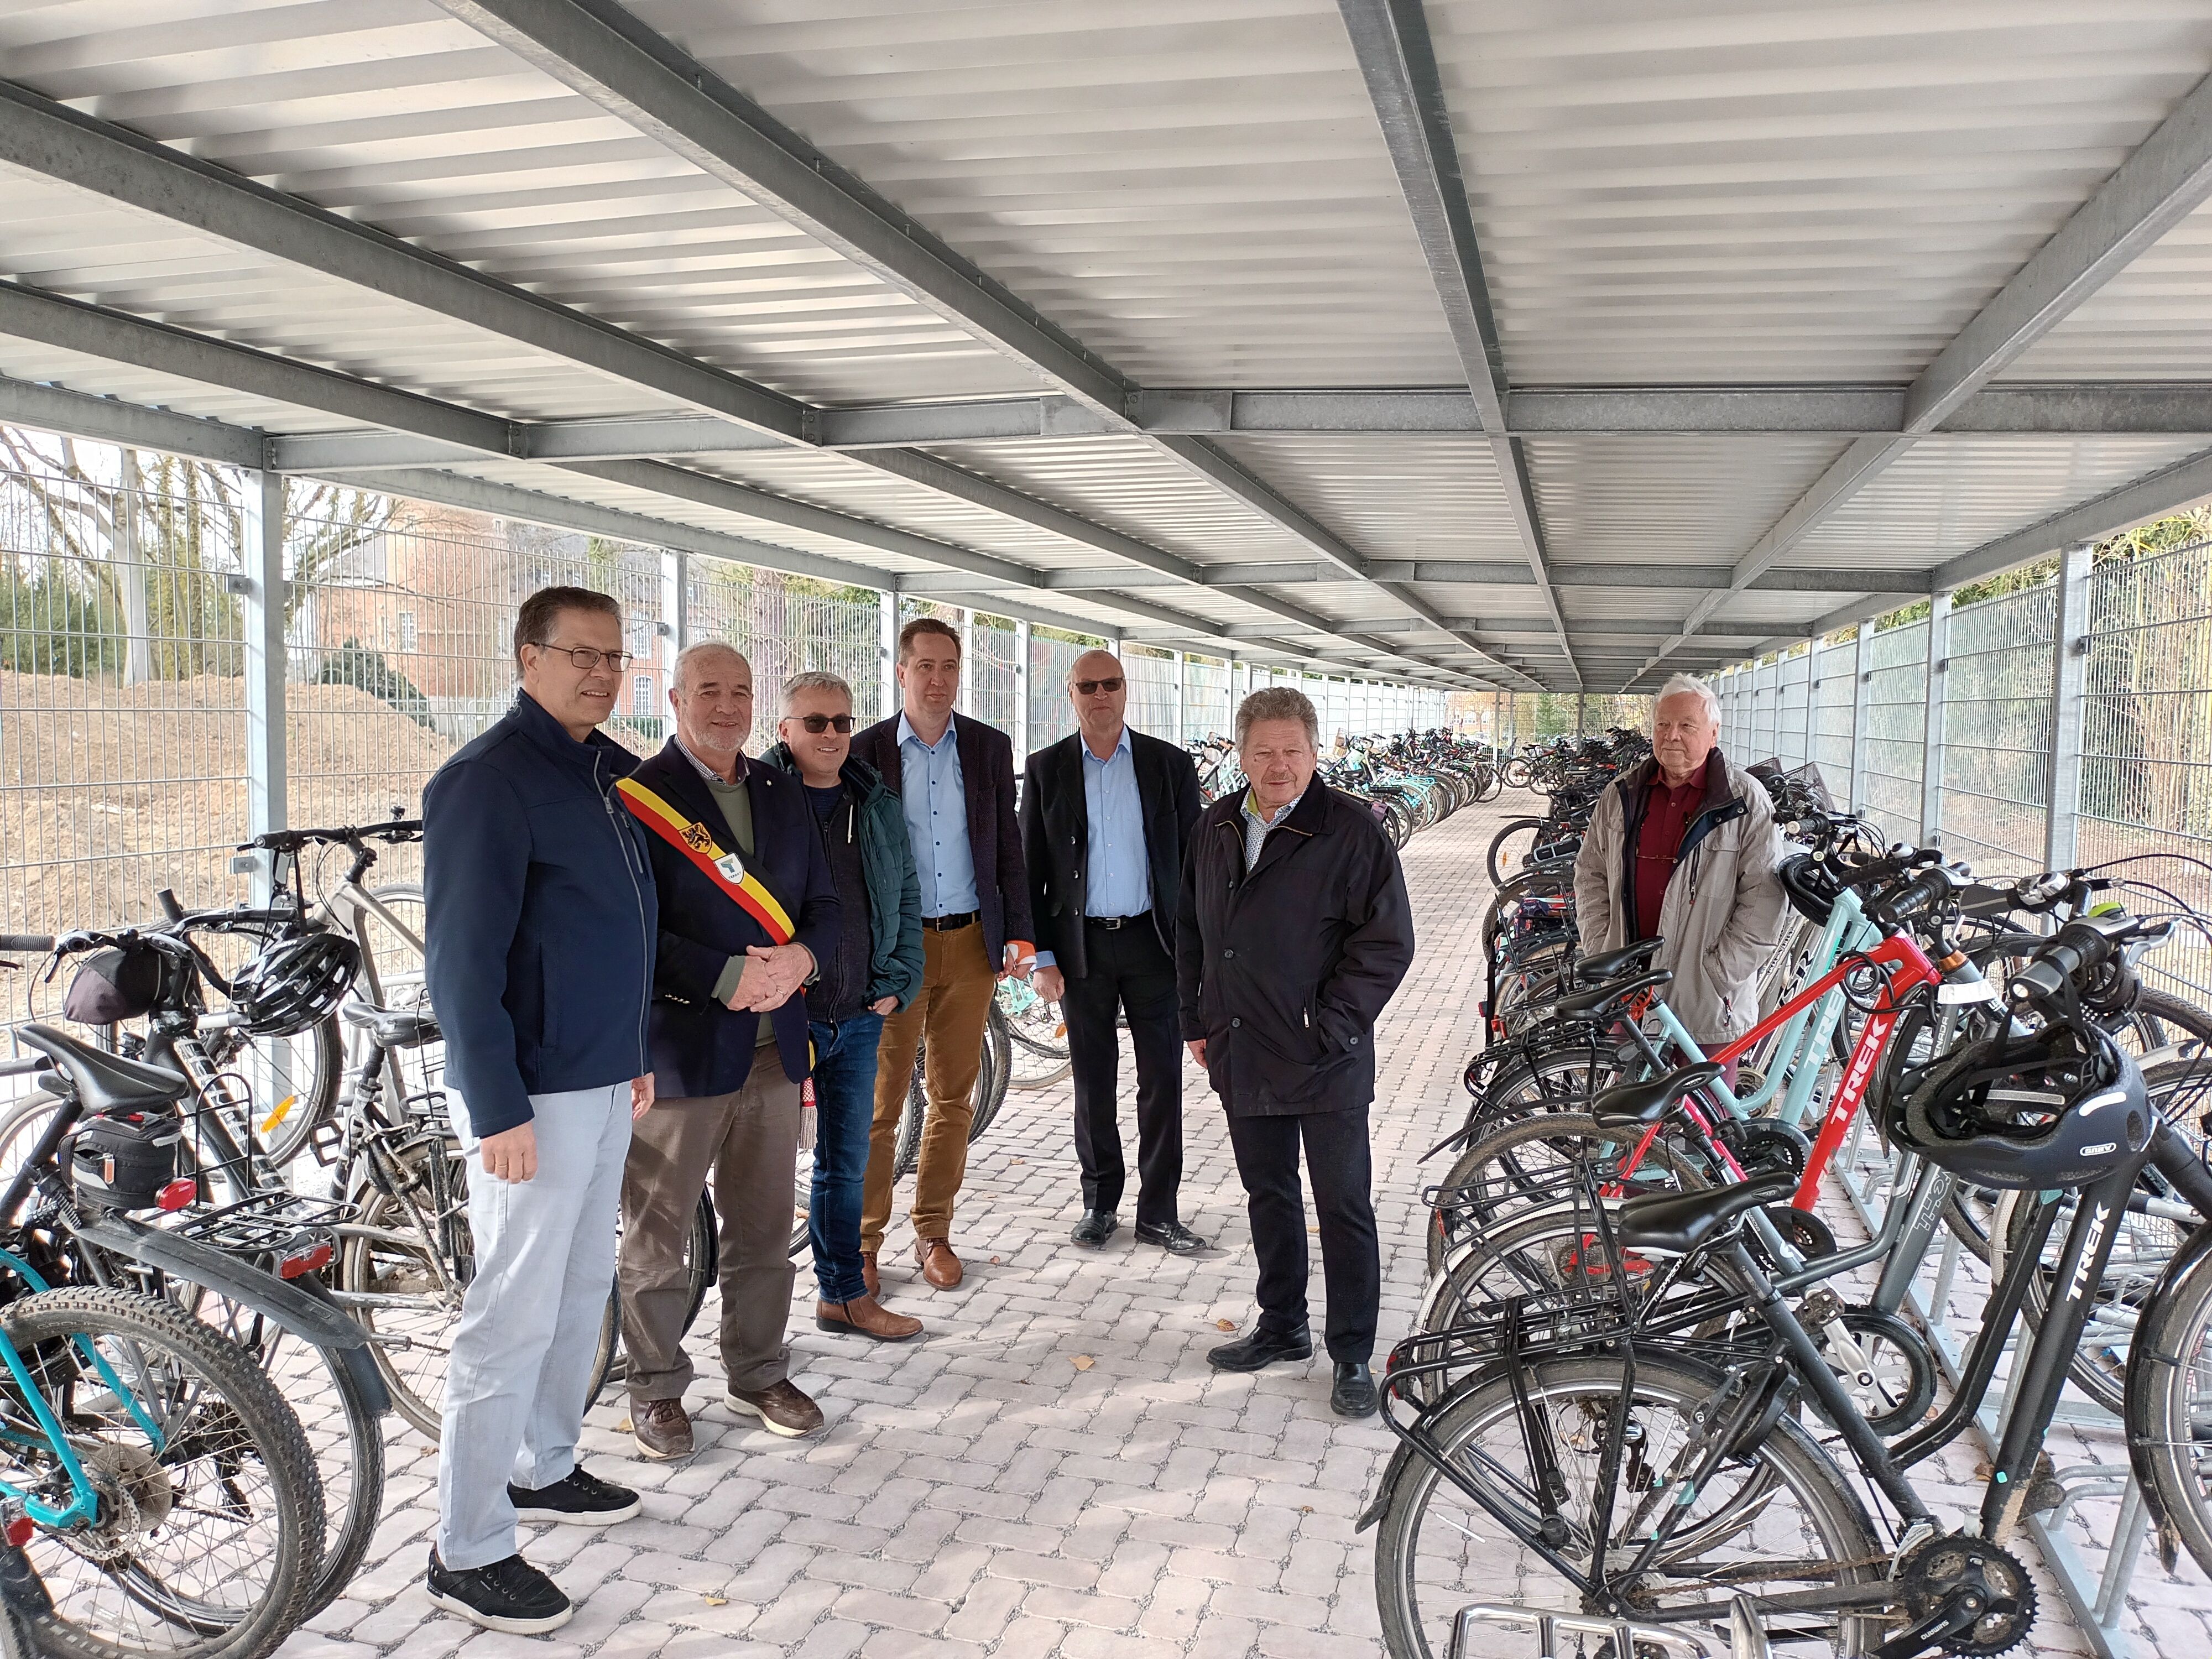 St.-Jozefsinstituut Ternat kon, met steun van de provincie, een nieuwe fietsenstalling aanleggen voor 200 tweewielers